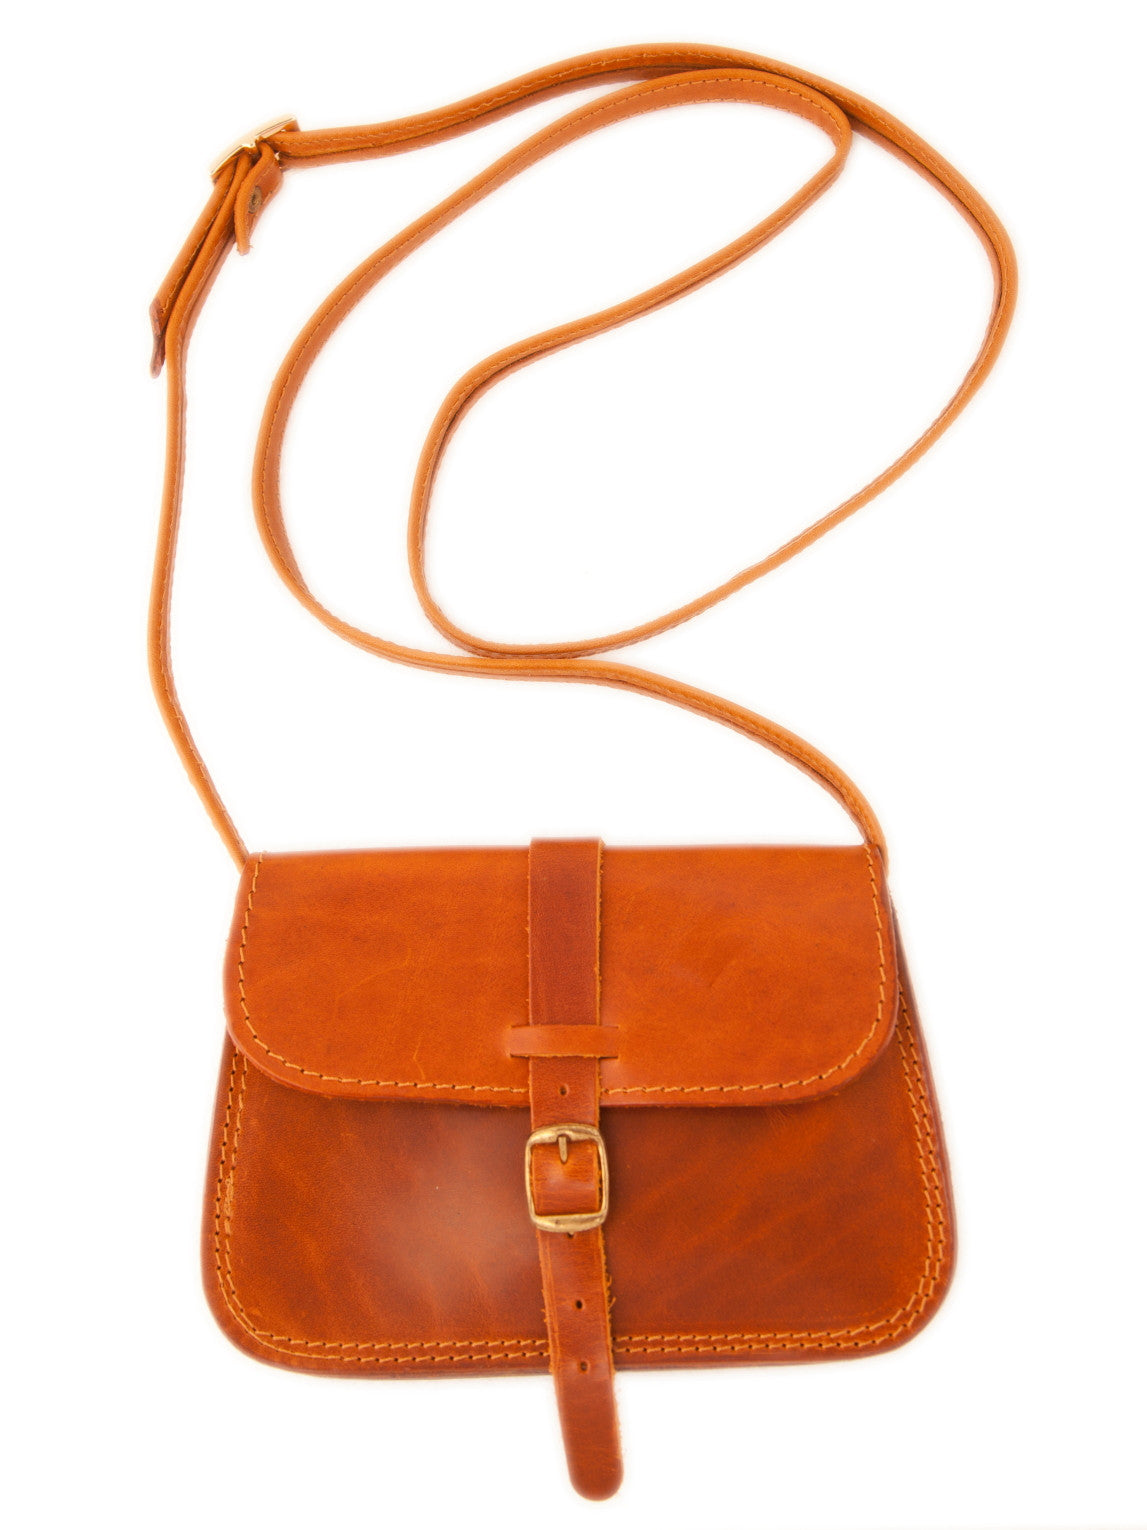 Handmade leather handbag wt/70